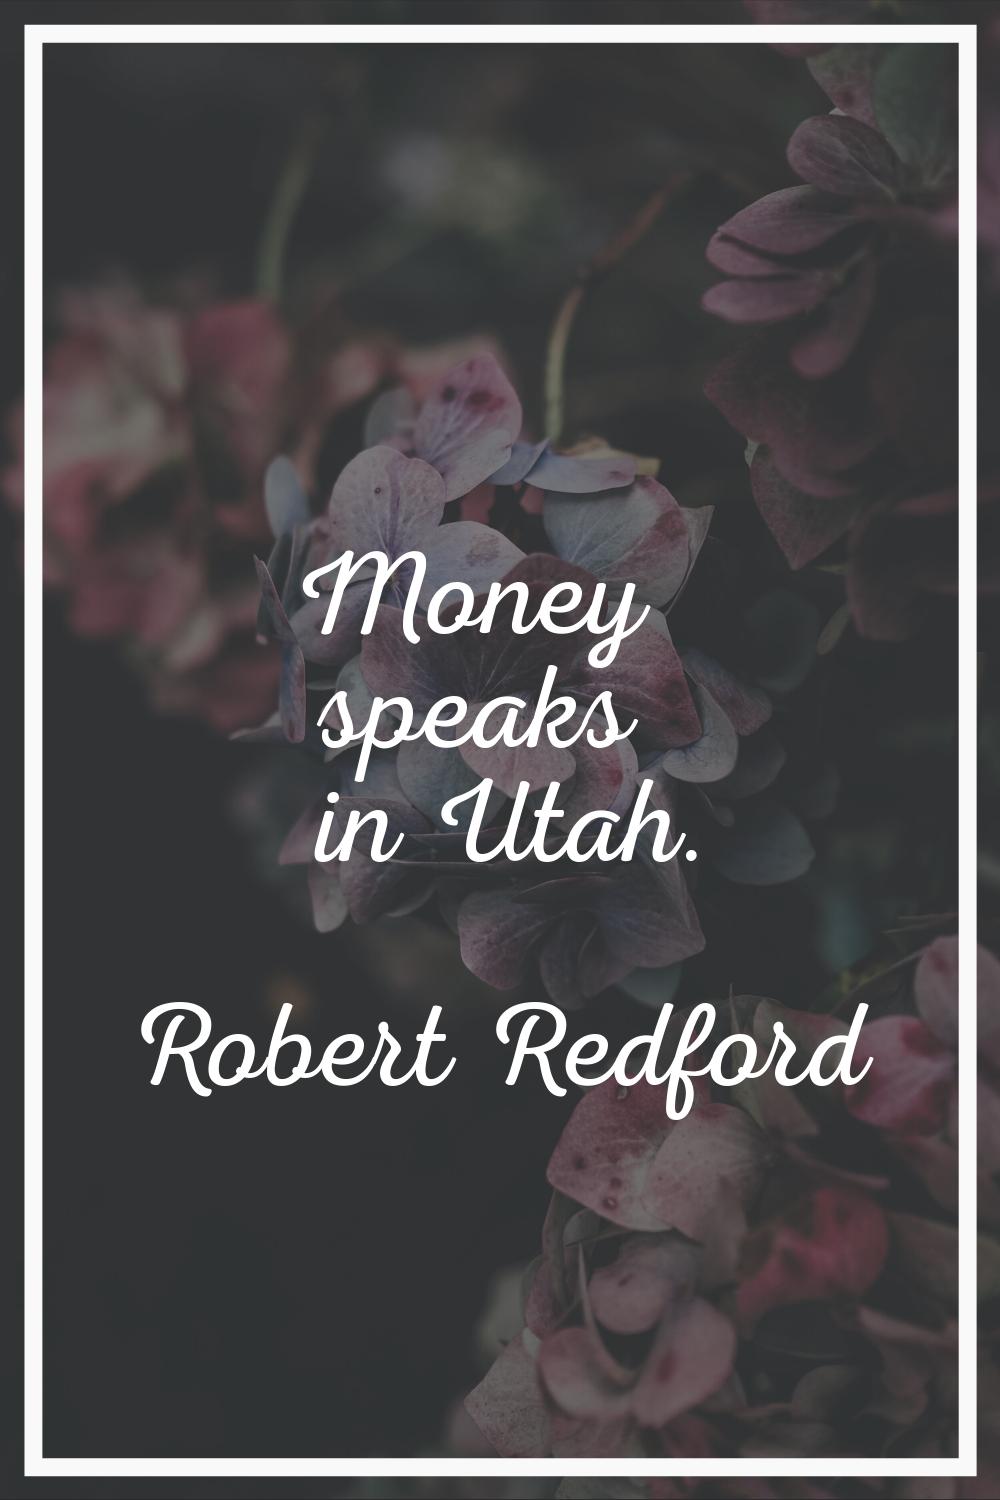 Money speaks in Utah.